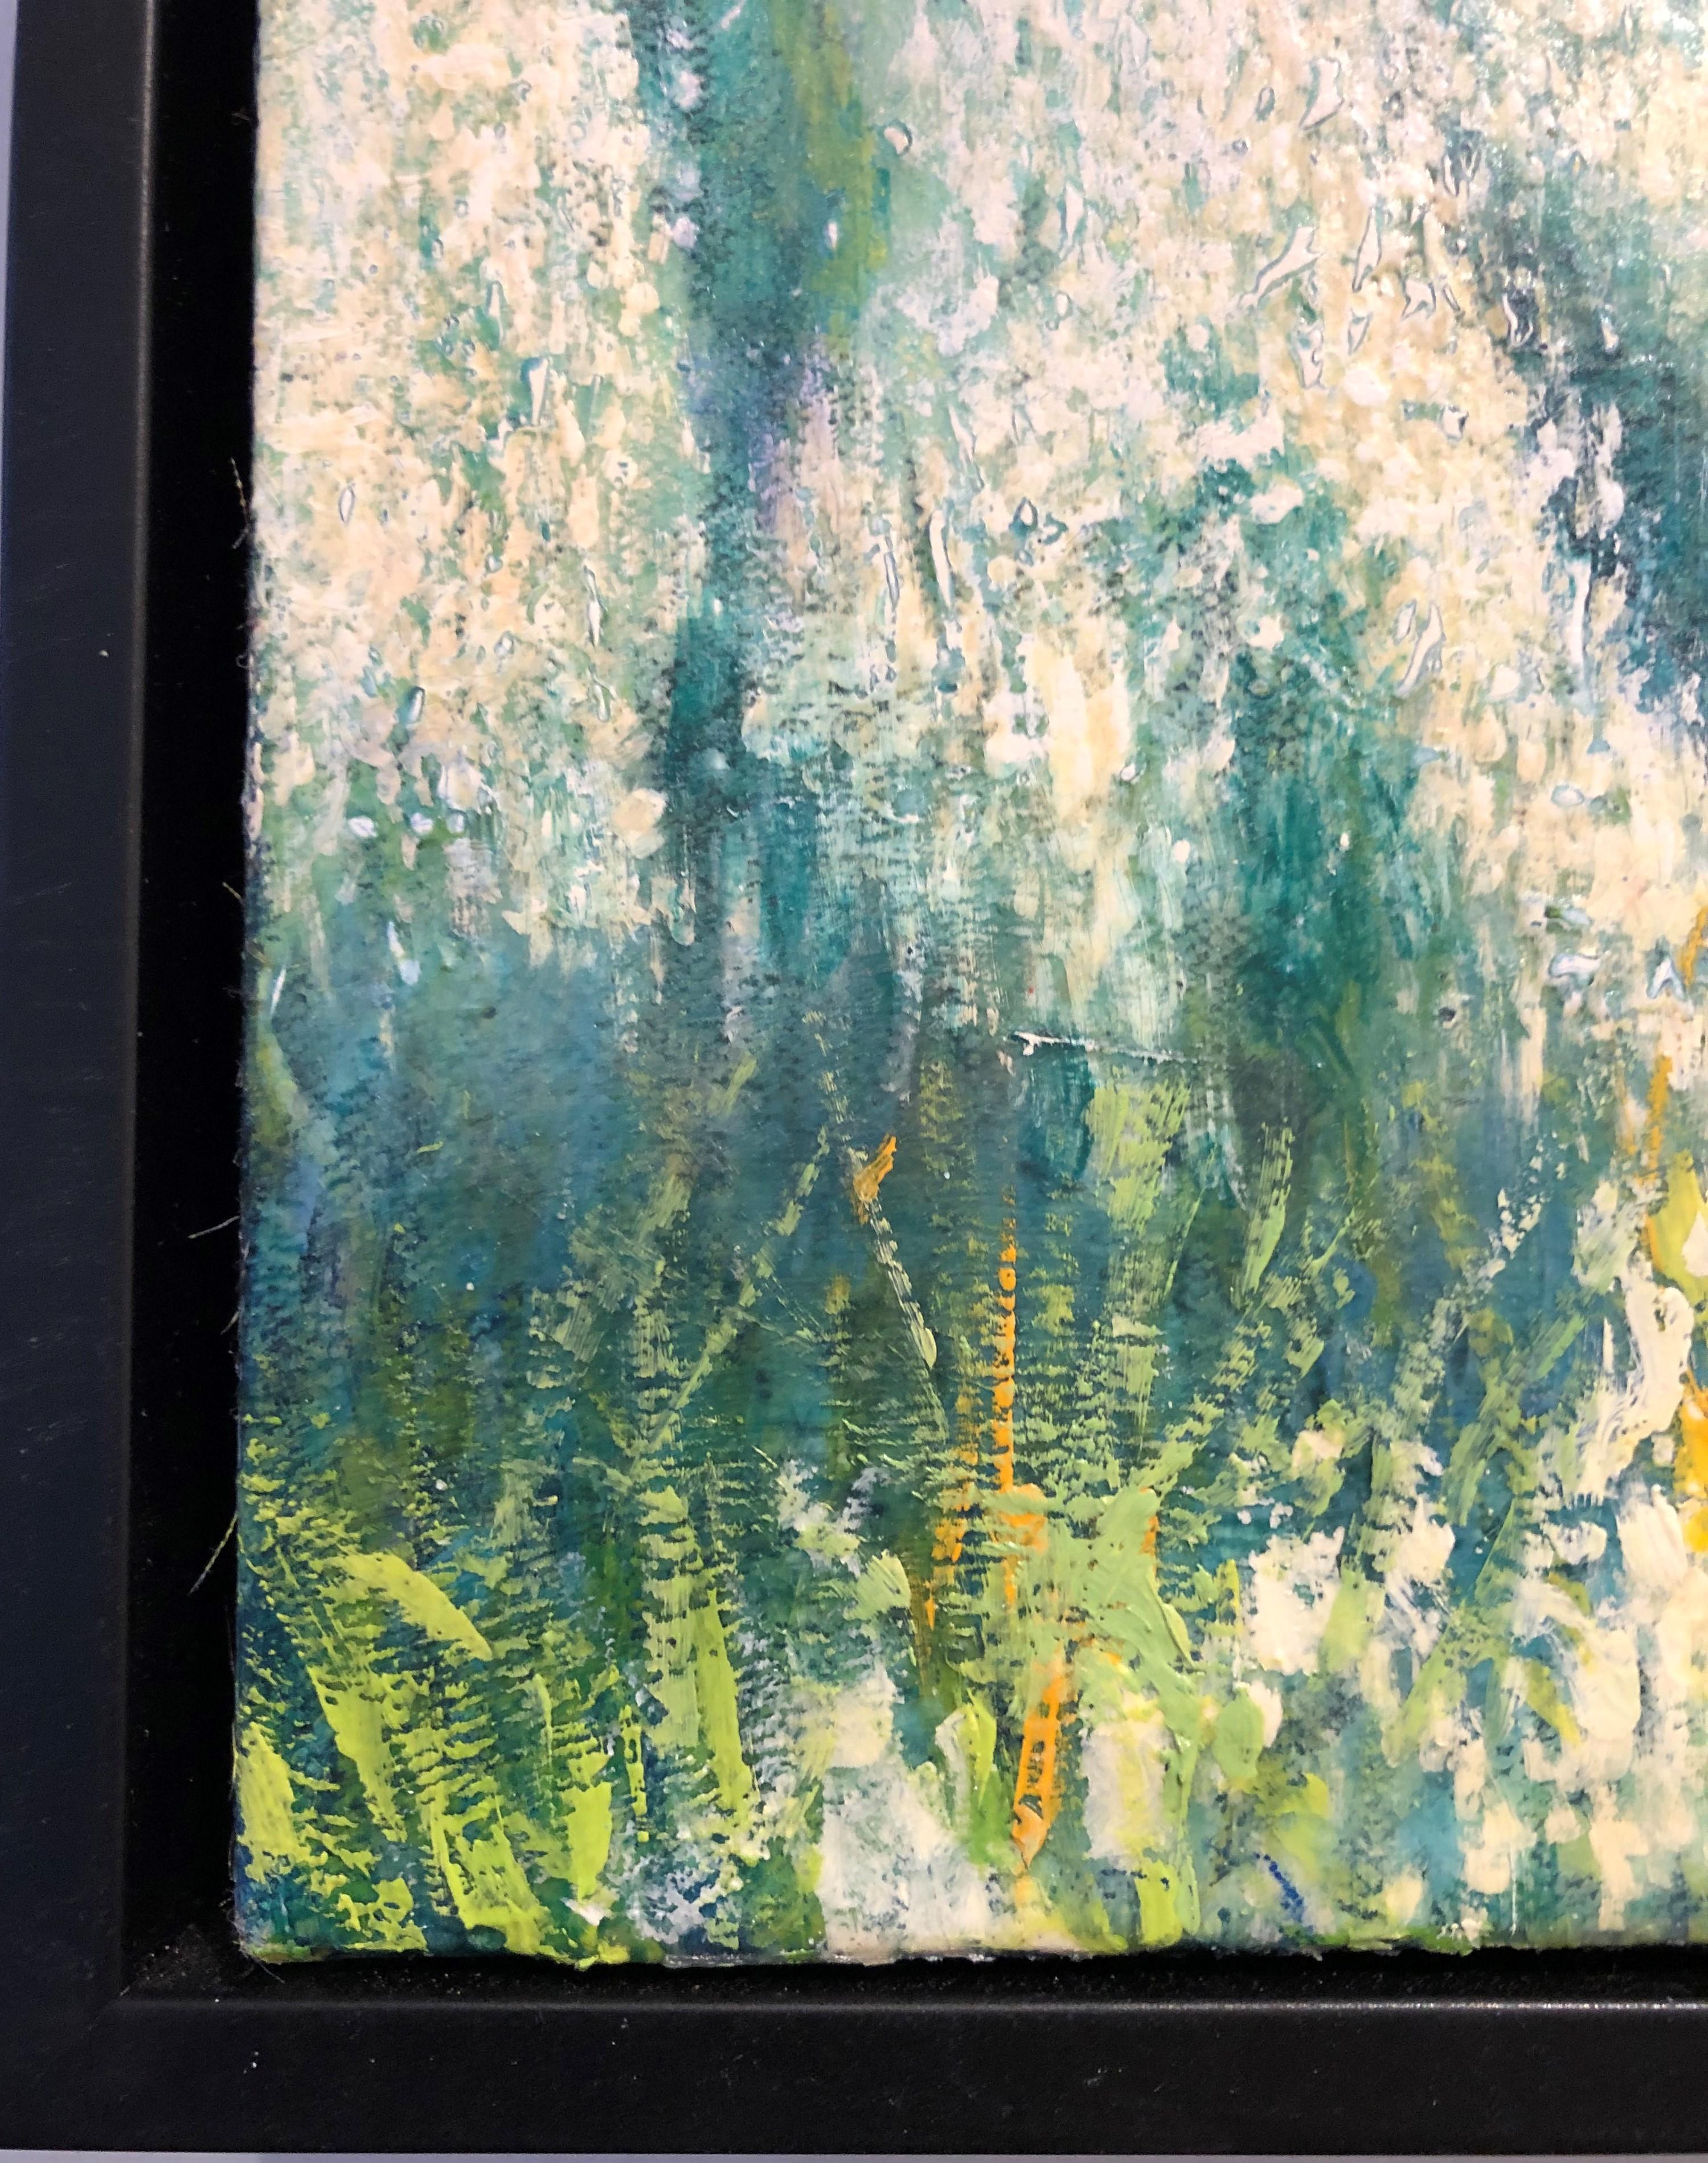 Barley Field - In Full Bloom on Rolling Hills, Oil on Canvas (Zeitgenössisch), Painting, von Deborah Ebbers